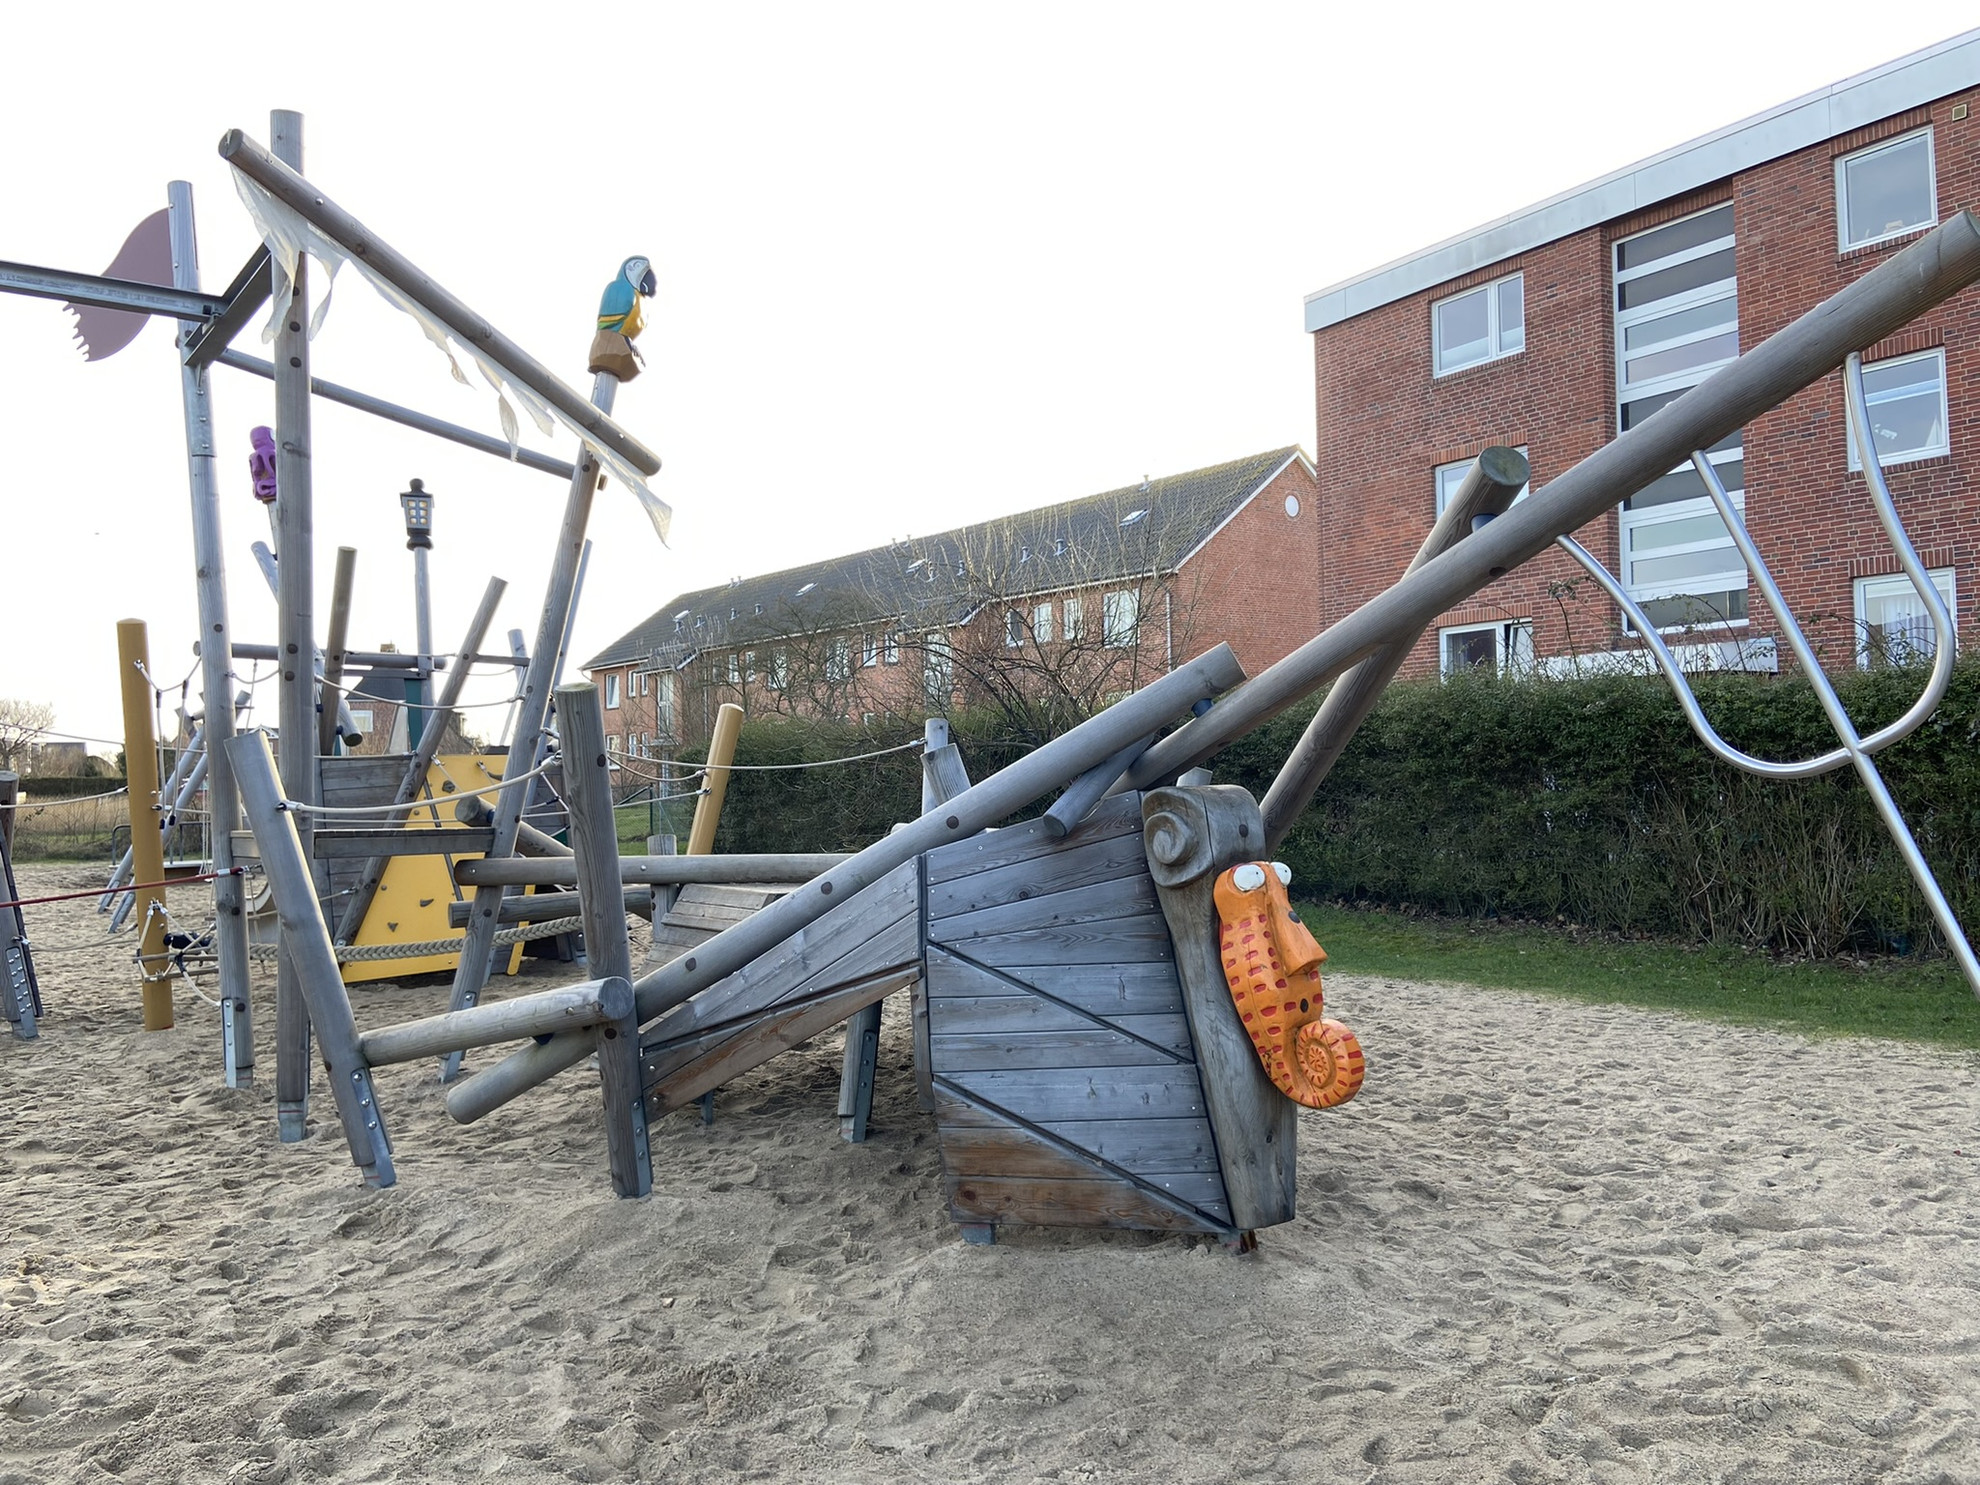 Piratenspielplatz in Westerland